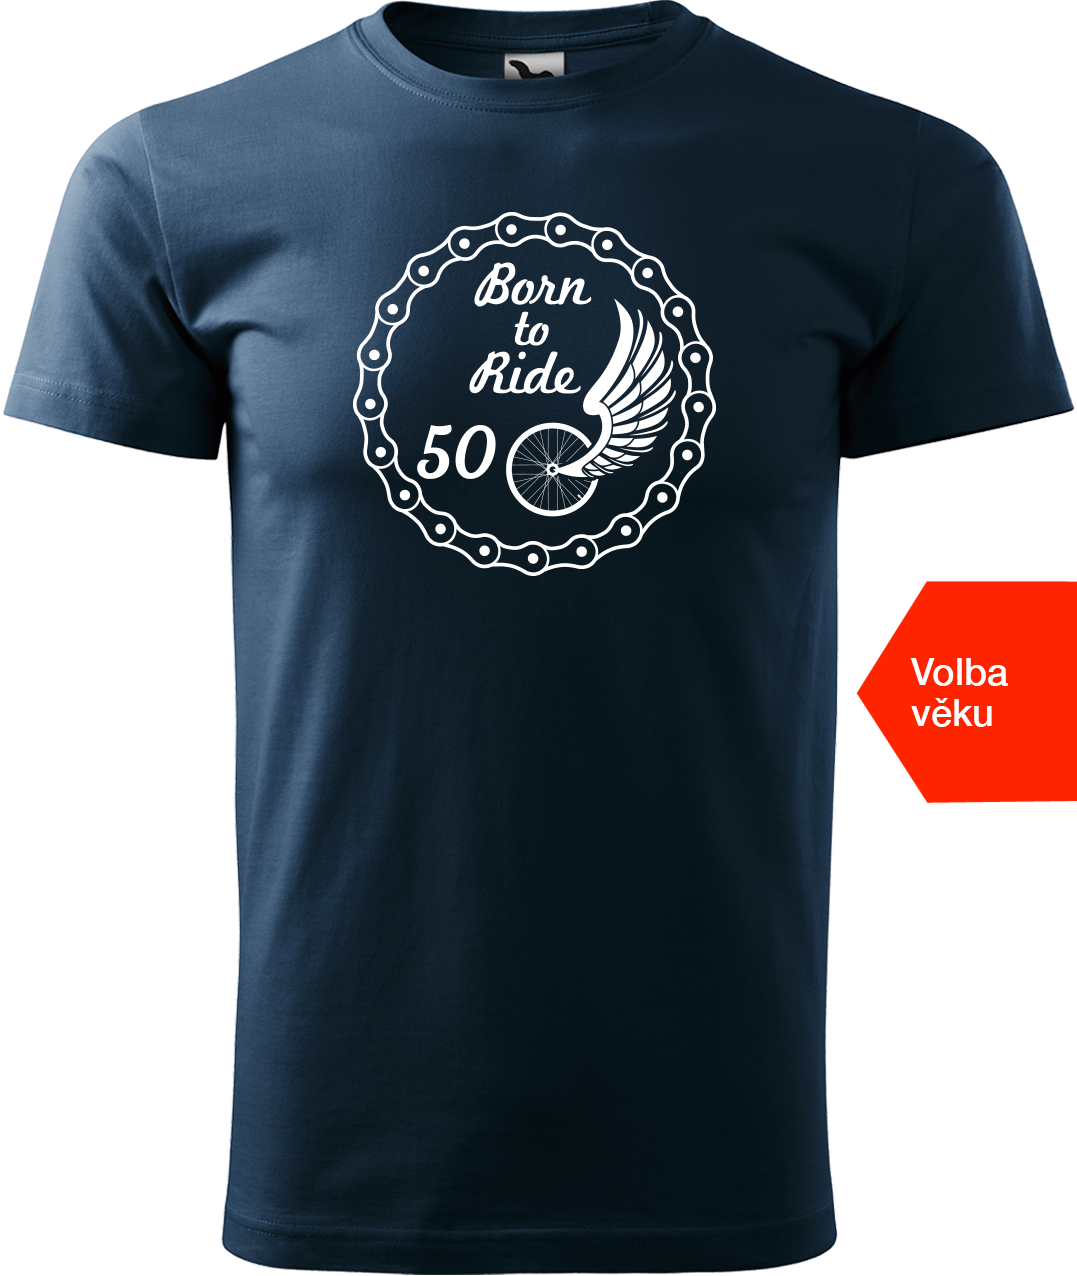 Pánské tričko pro cyklistu s věkem - Born to Ride (wings) Velikost: M, Barva: Námořní modrá (02)